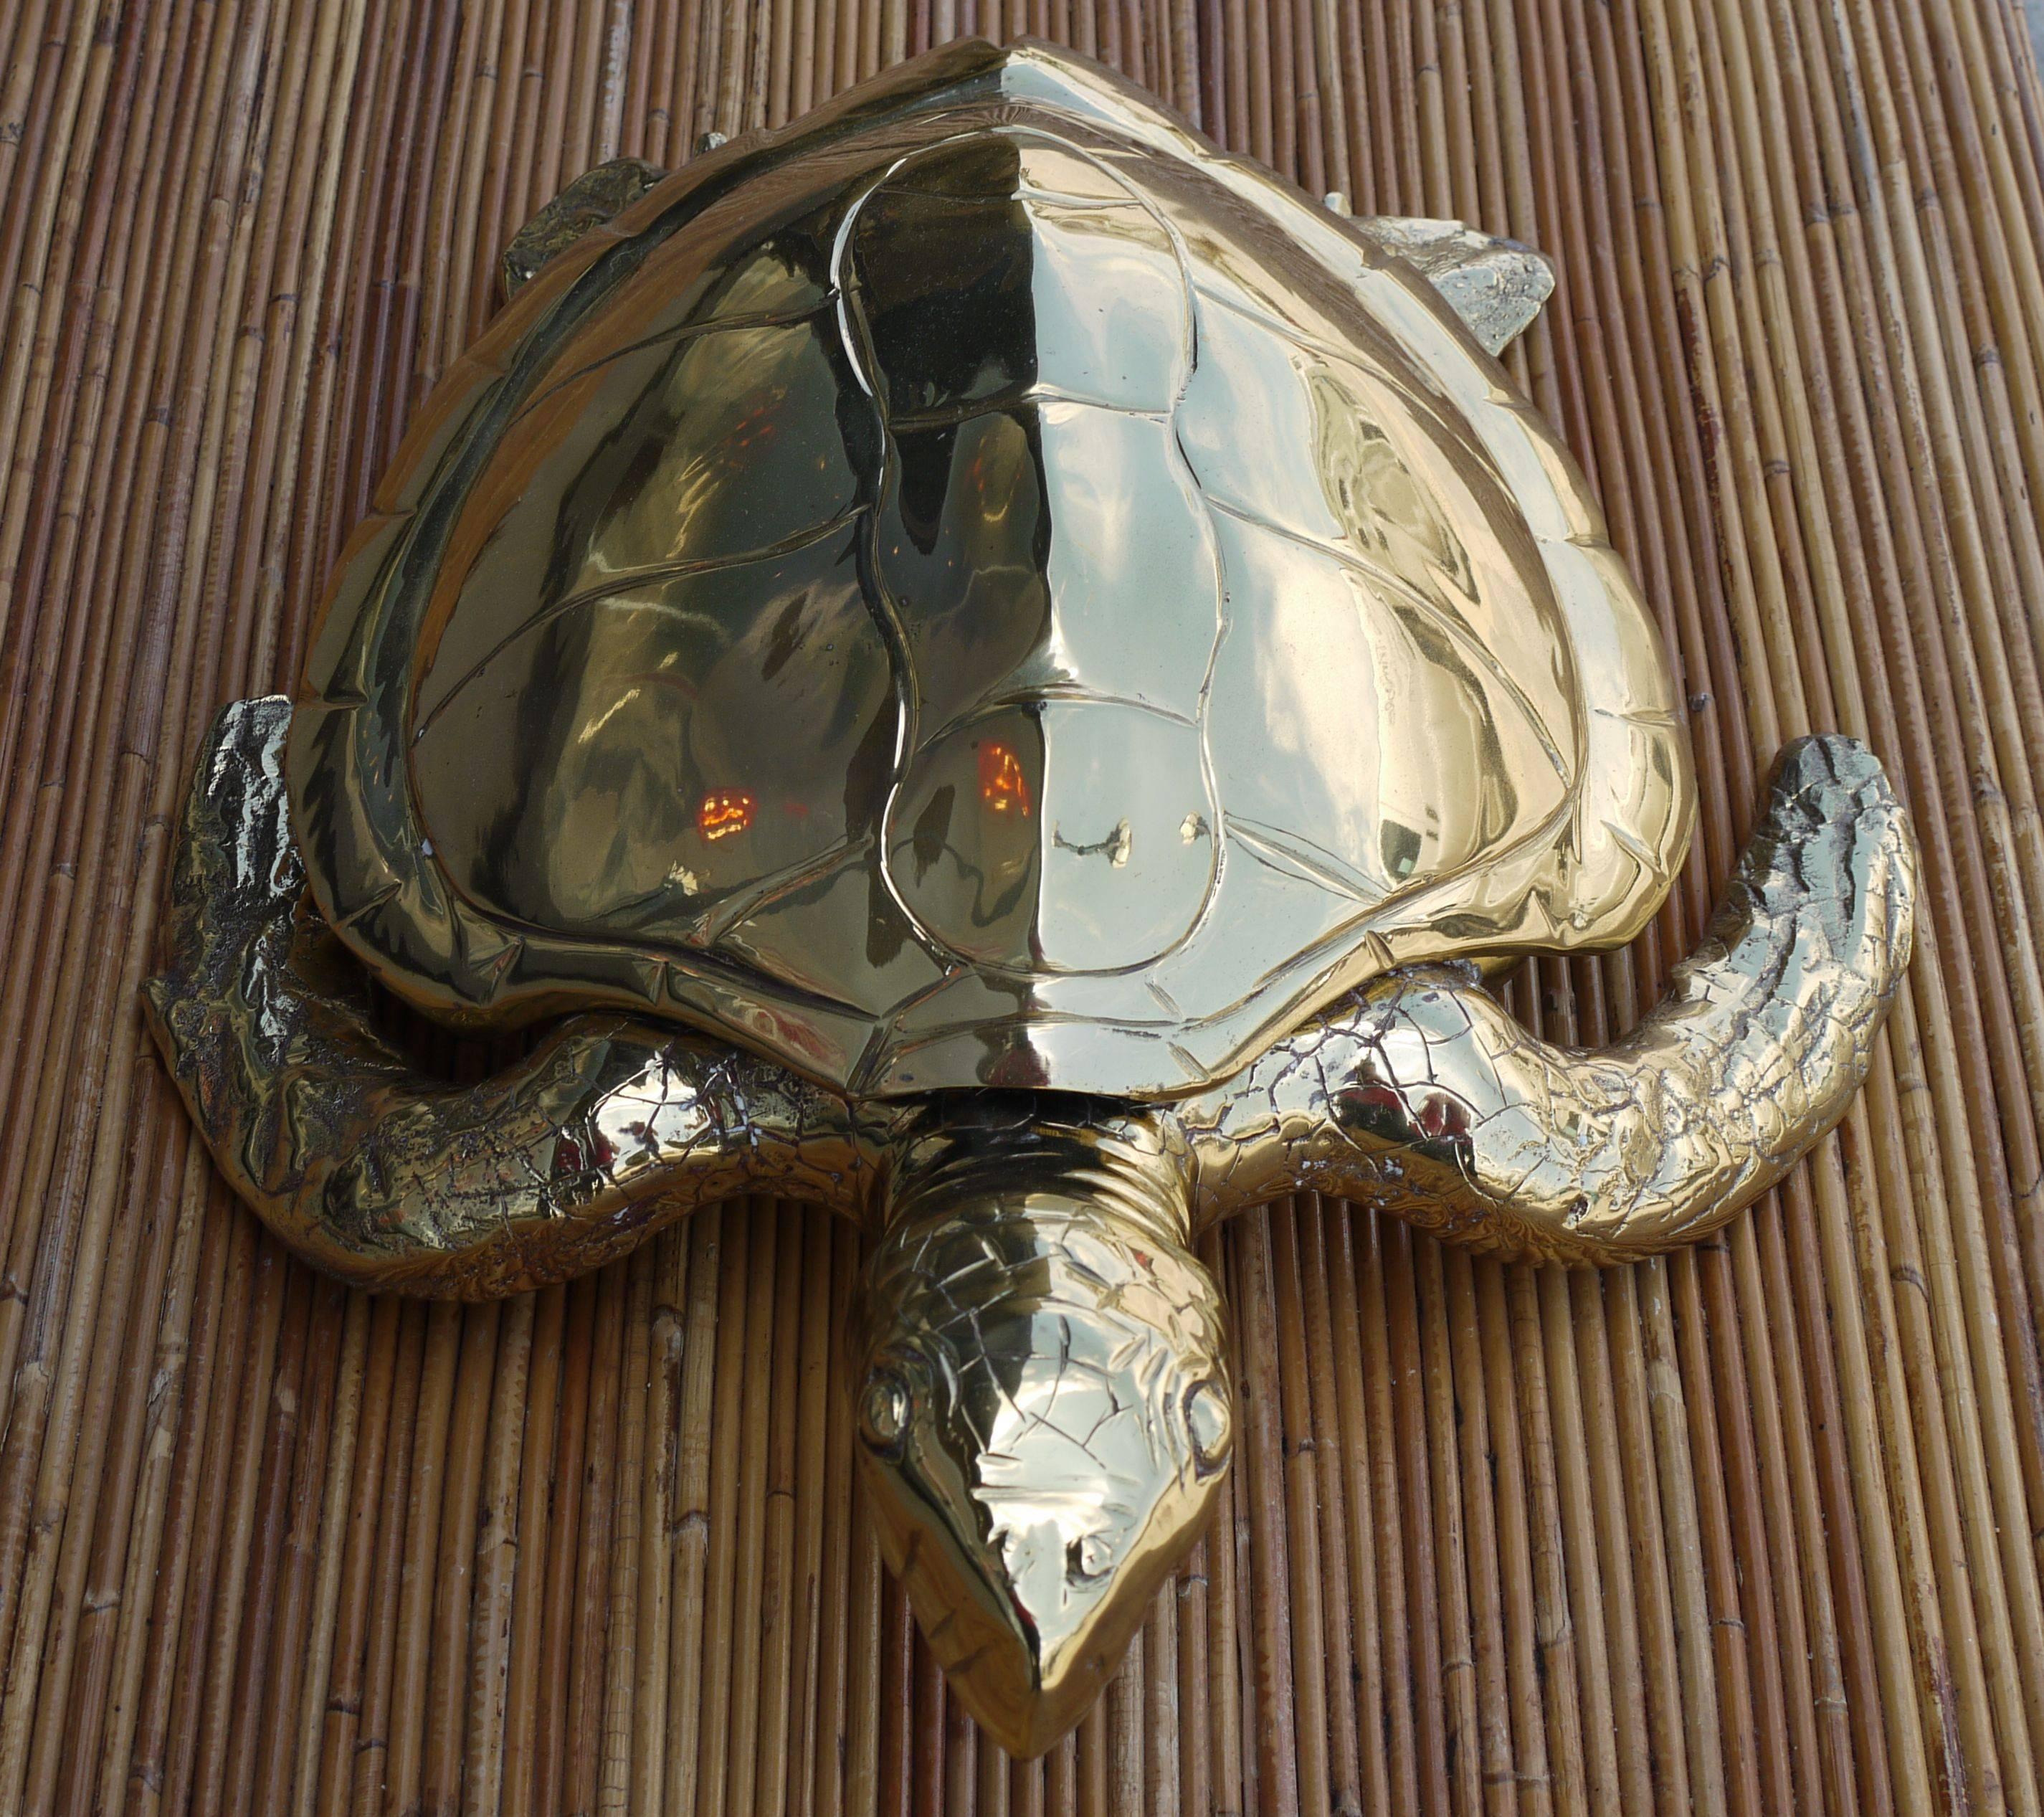 brass turtle